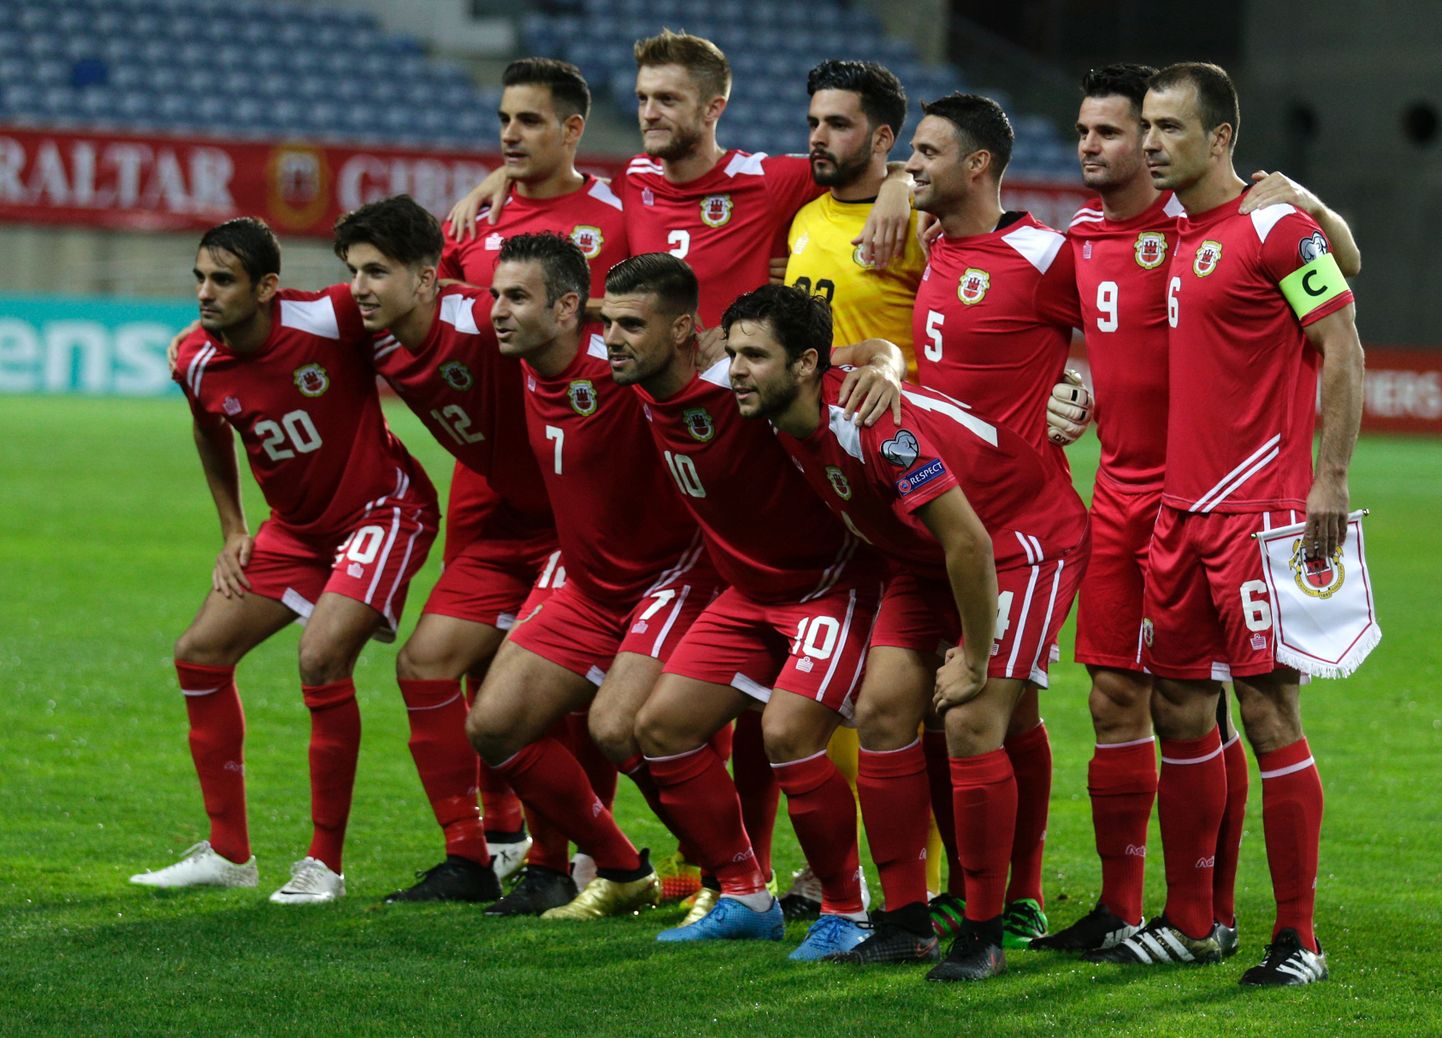 Gibraltari jalgpallikoondis sai Läti vastu kirja oma ajaloo teise võidu.